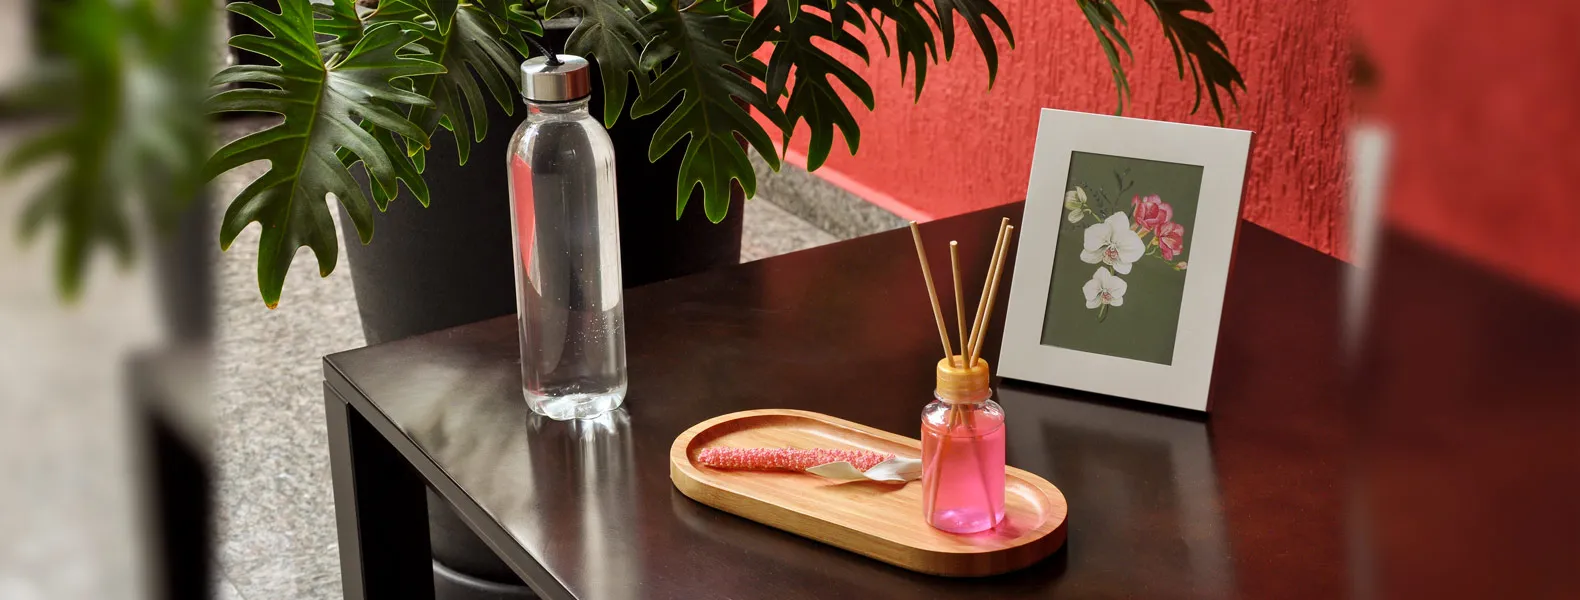 Kit bandeja, aromatizador e acessórios. Composto por bandeja oval em bambu; garrafa transparente em PET; porta-retrato em alumínio; aromatizador de ambiente com fragrância de orquídea.